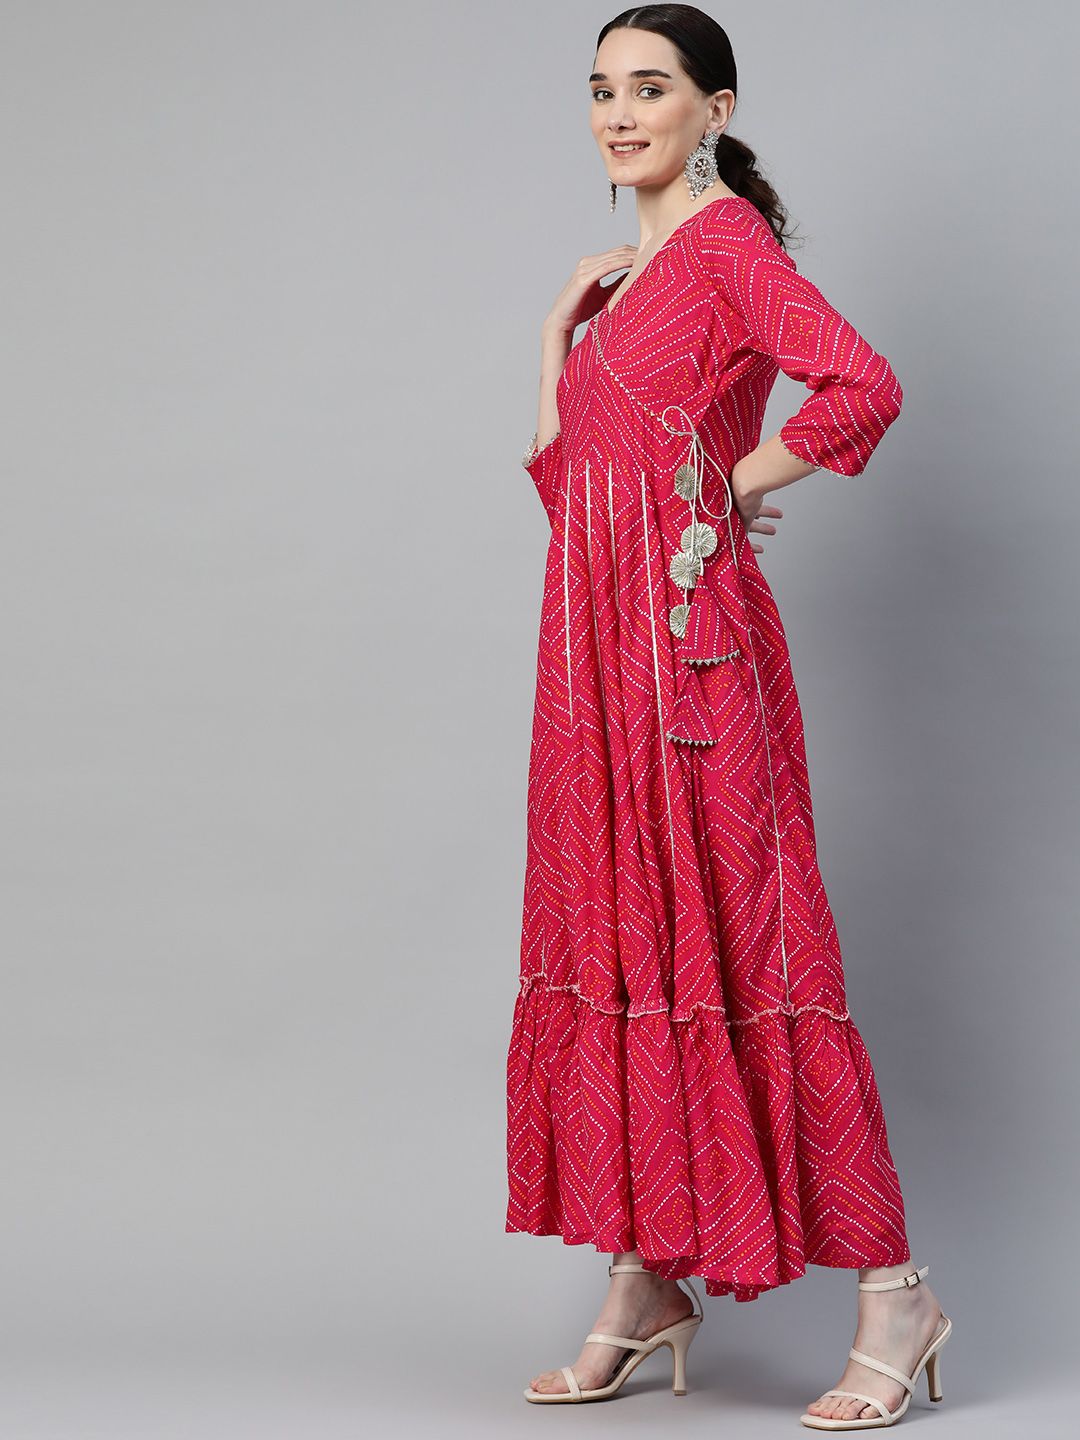 mokshi Pink Bandhani Ethnic Maxi Dress Price in India